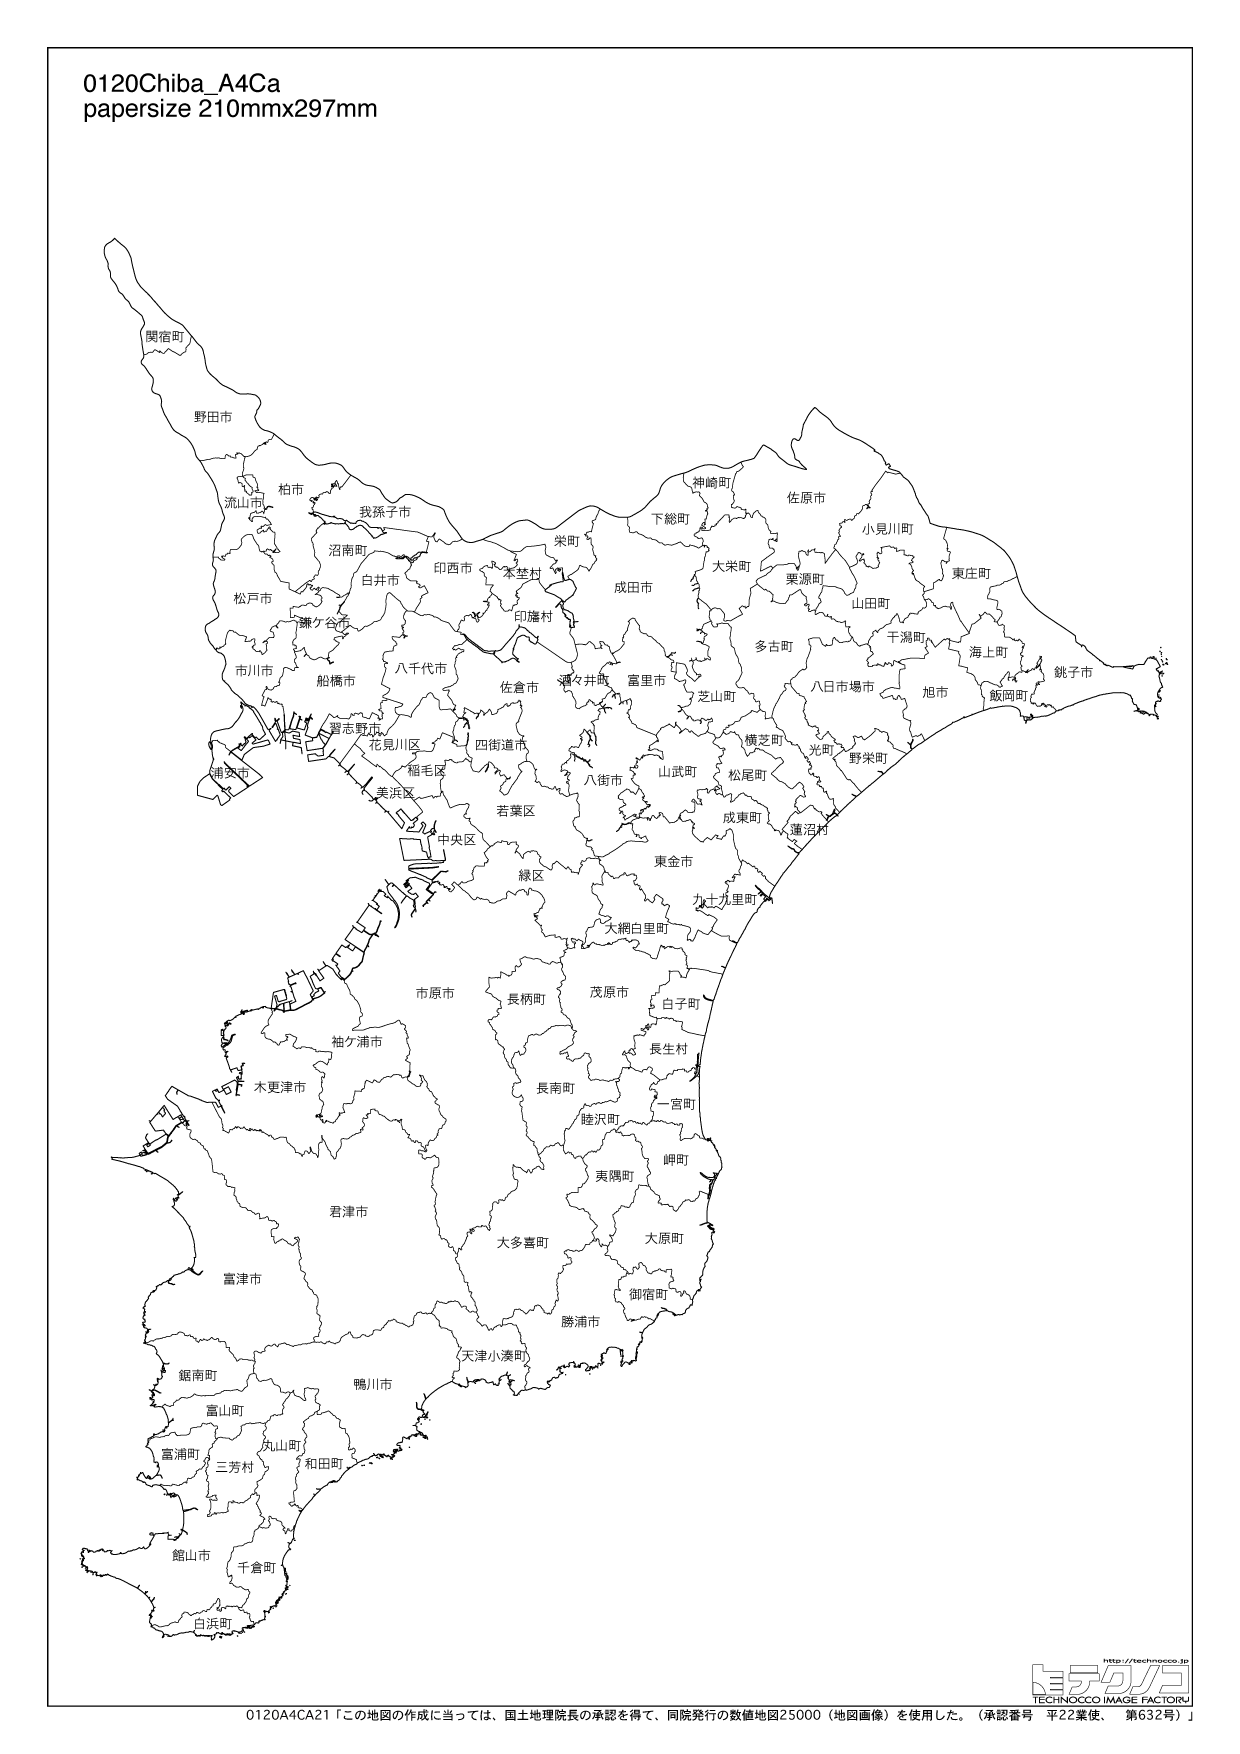 千葉県の白地図と市町村の合併情報